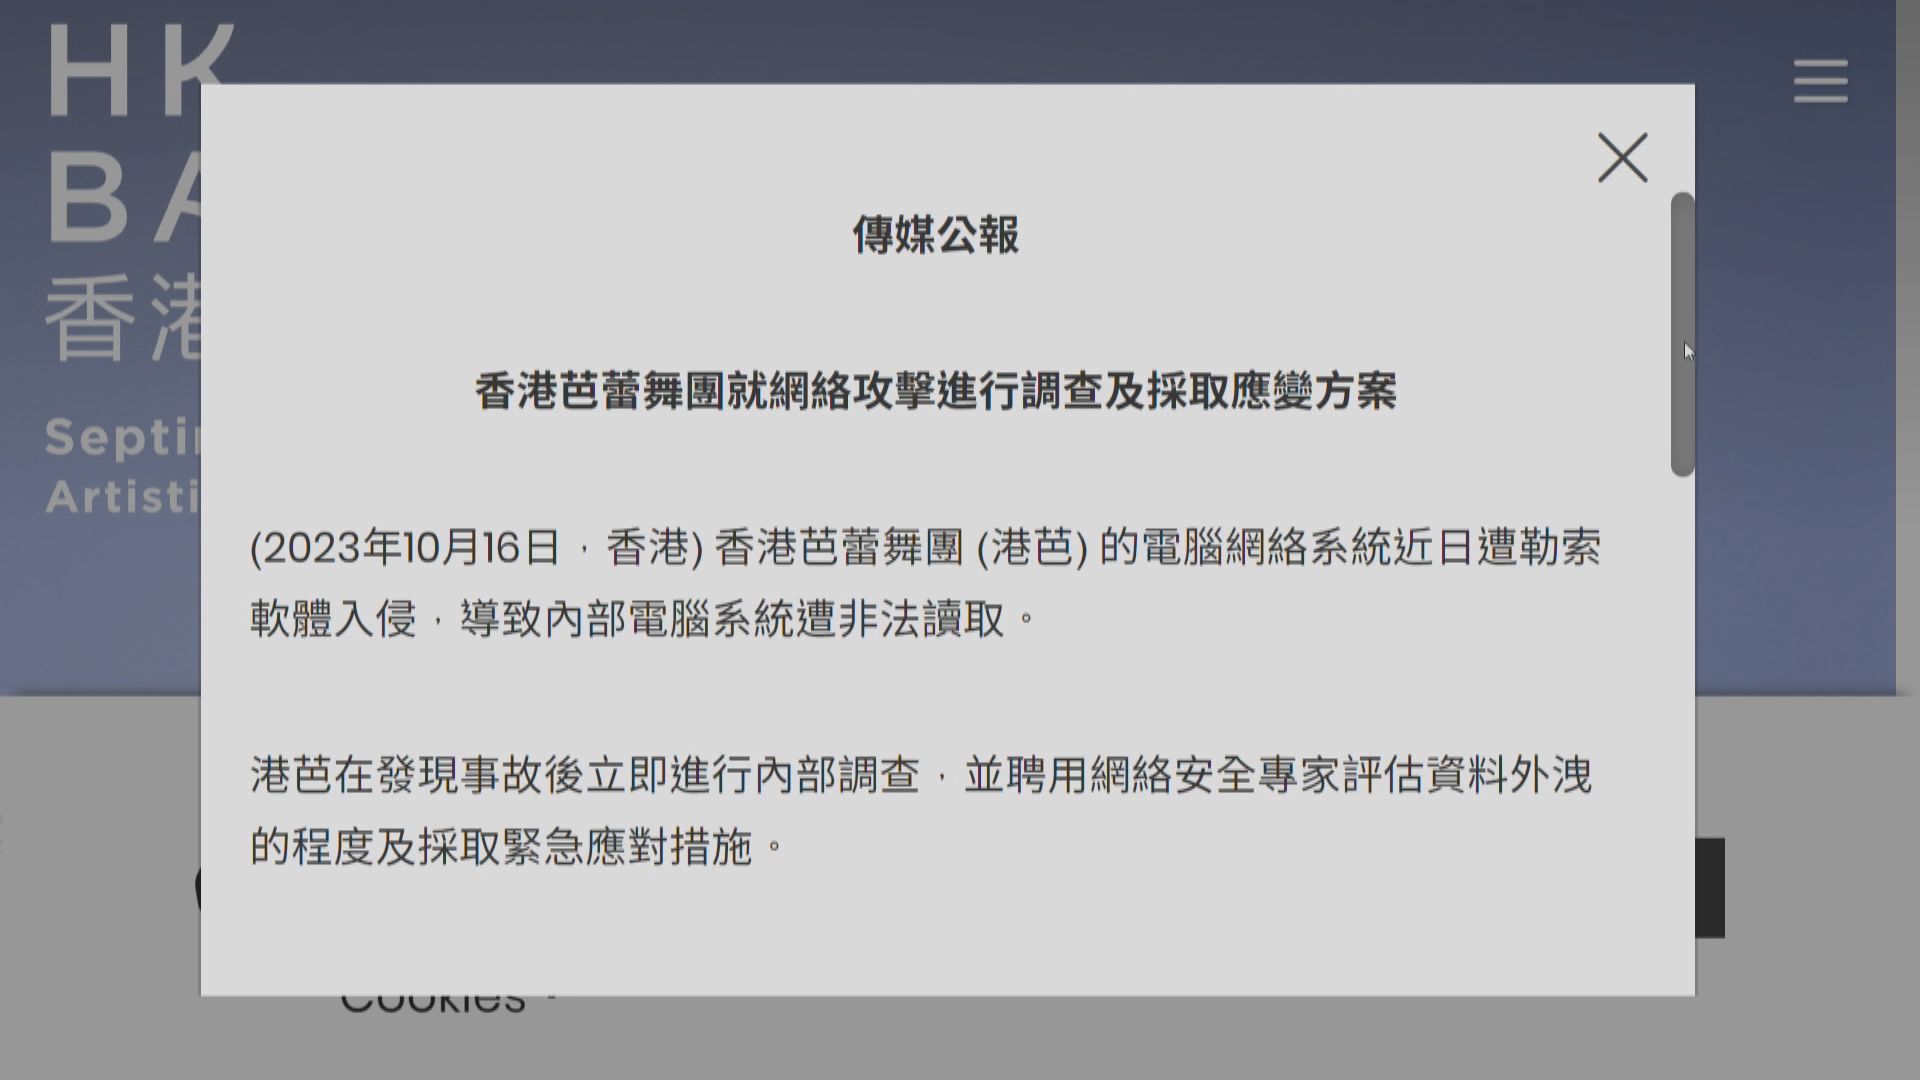 香港芭蕾舞團的電腦網絡系統被勒索軟件入侵 部分資料或外洩